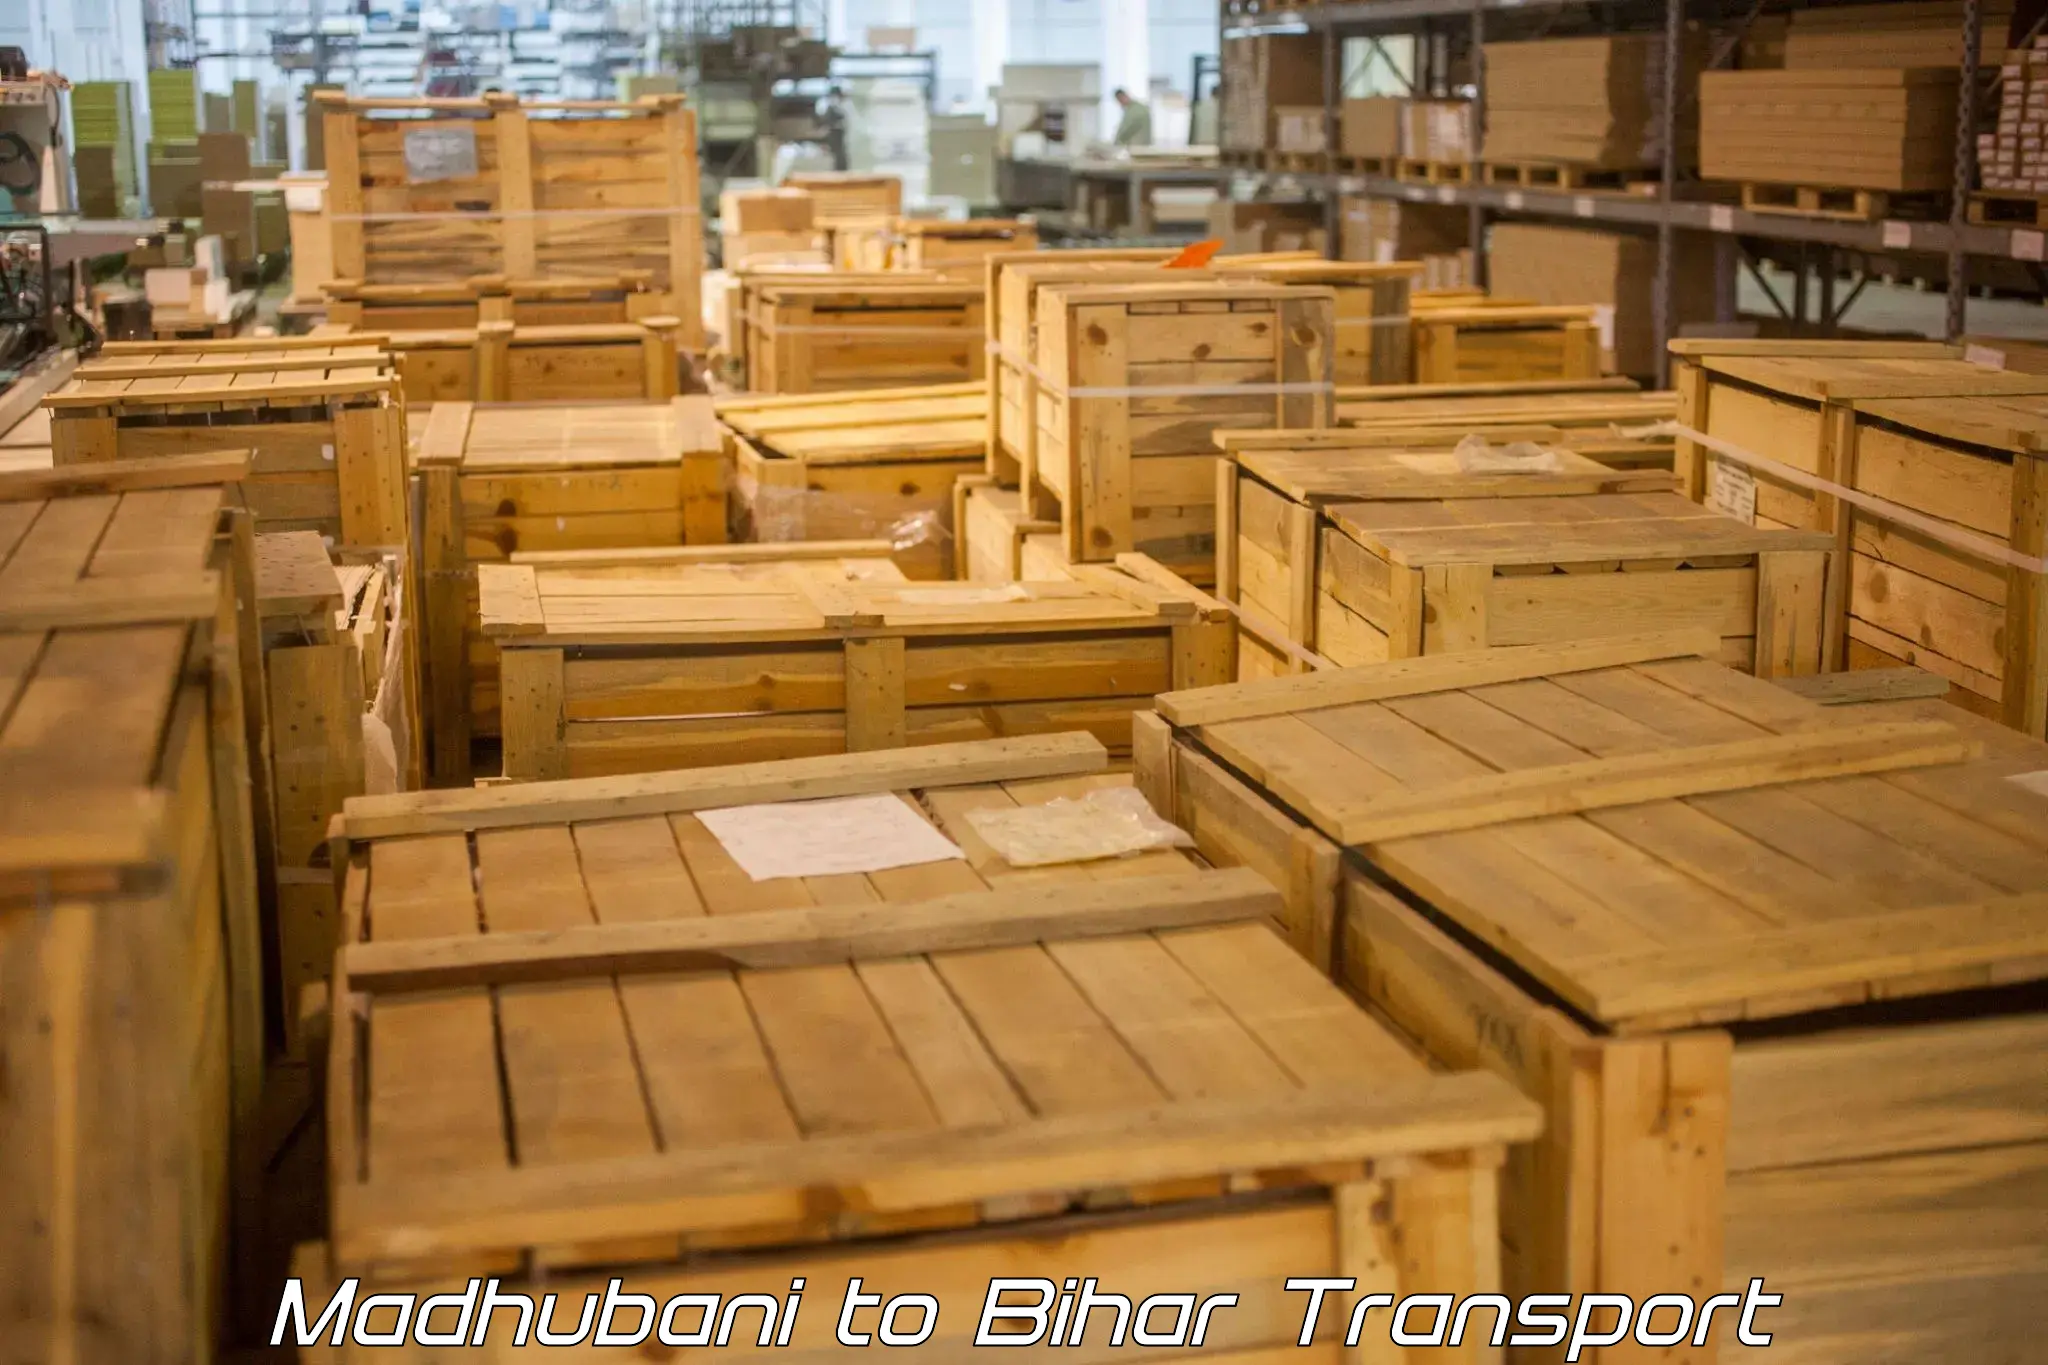 Part load transport service in India Madhubani to Kishunganj